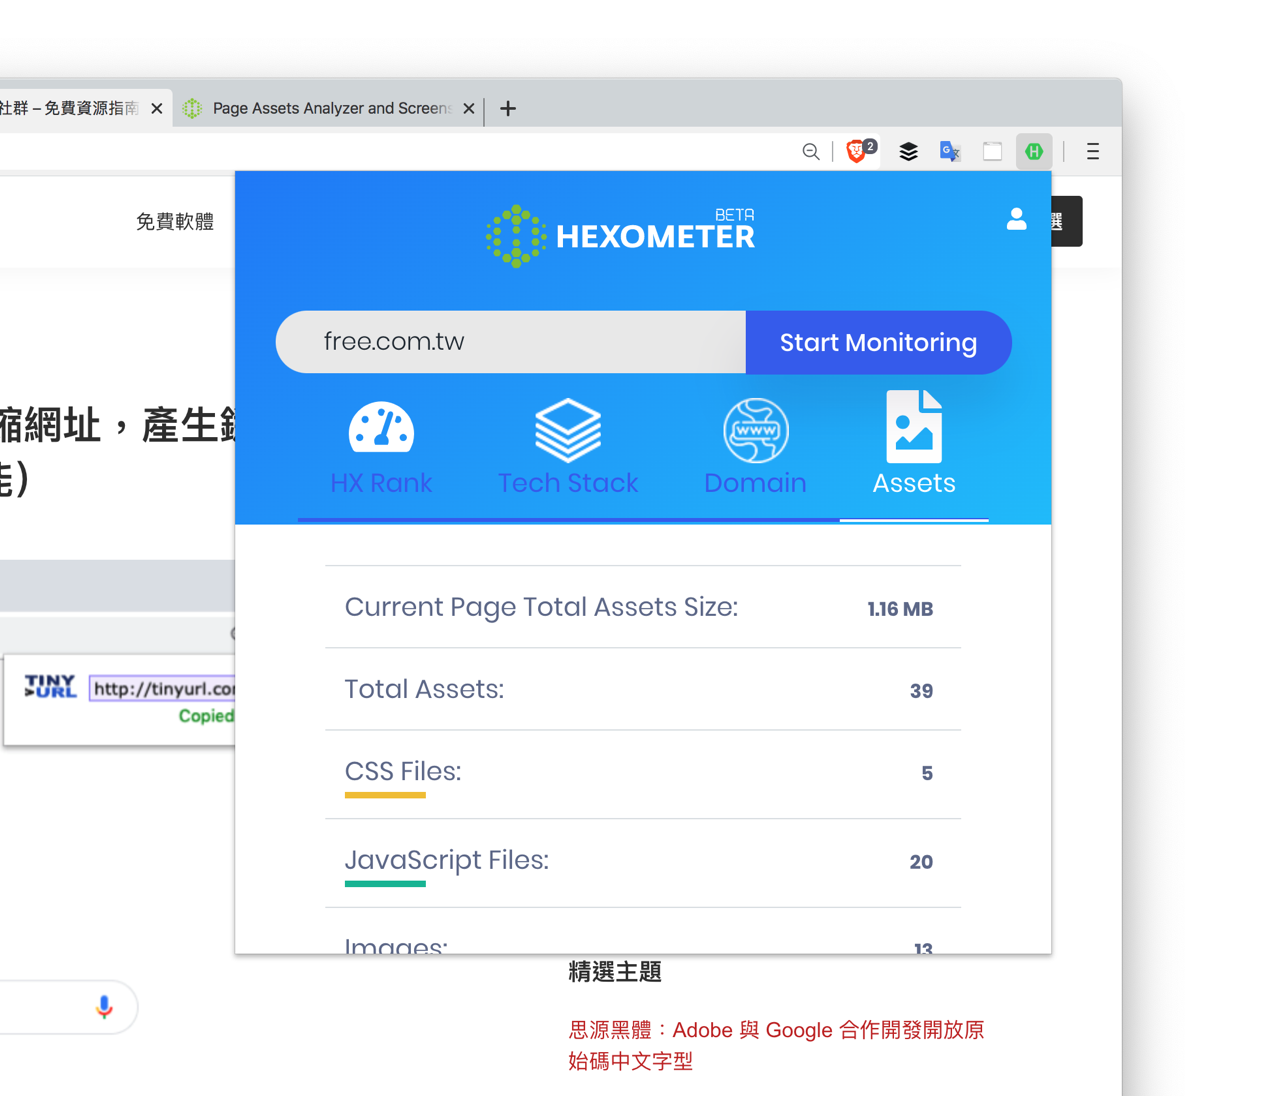 Hexometer Website Analyzer